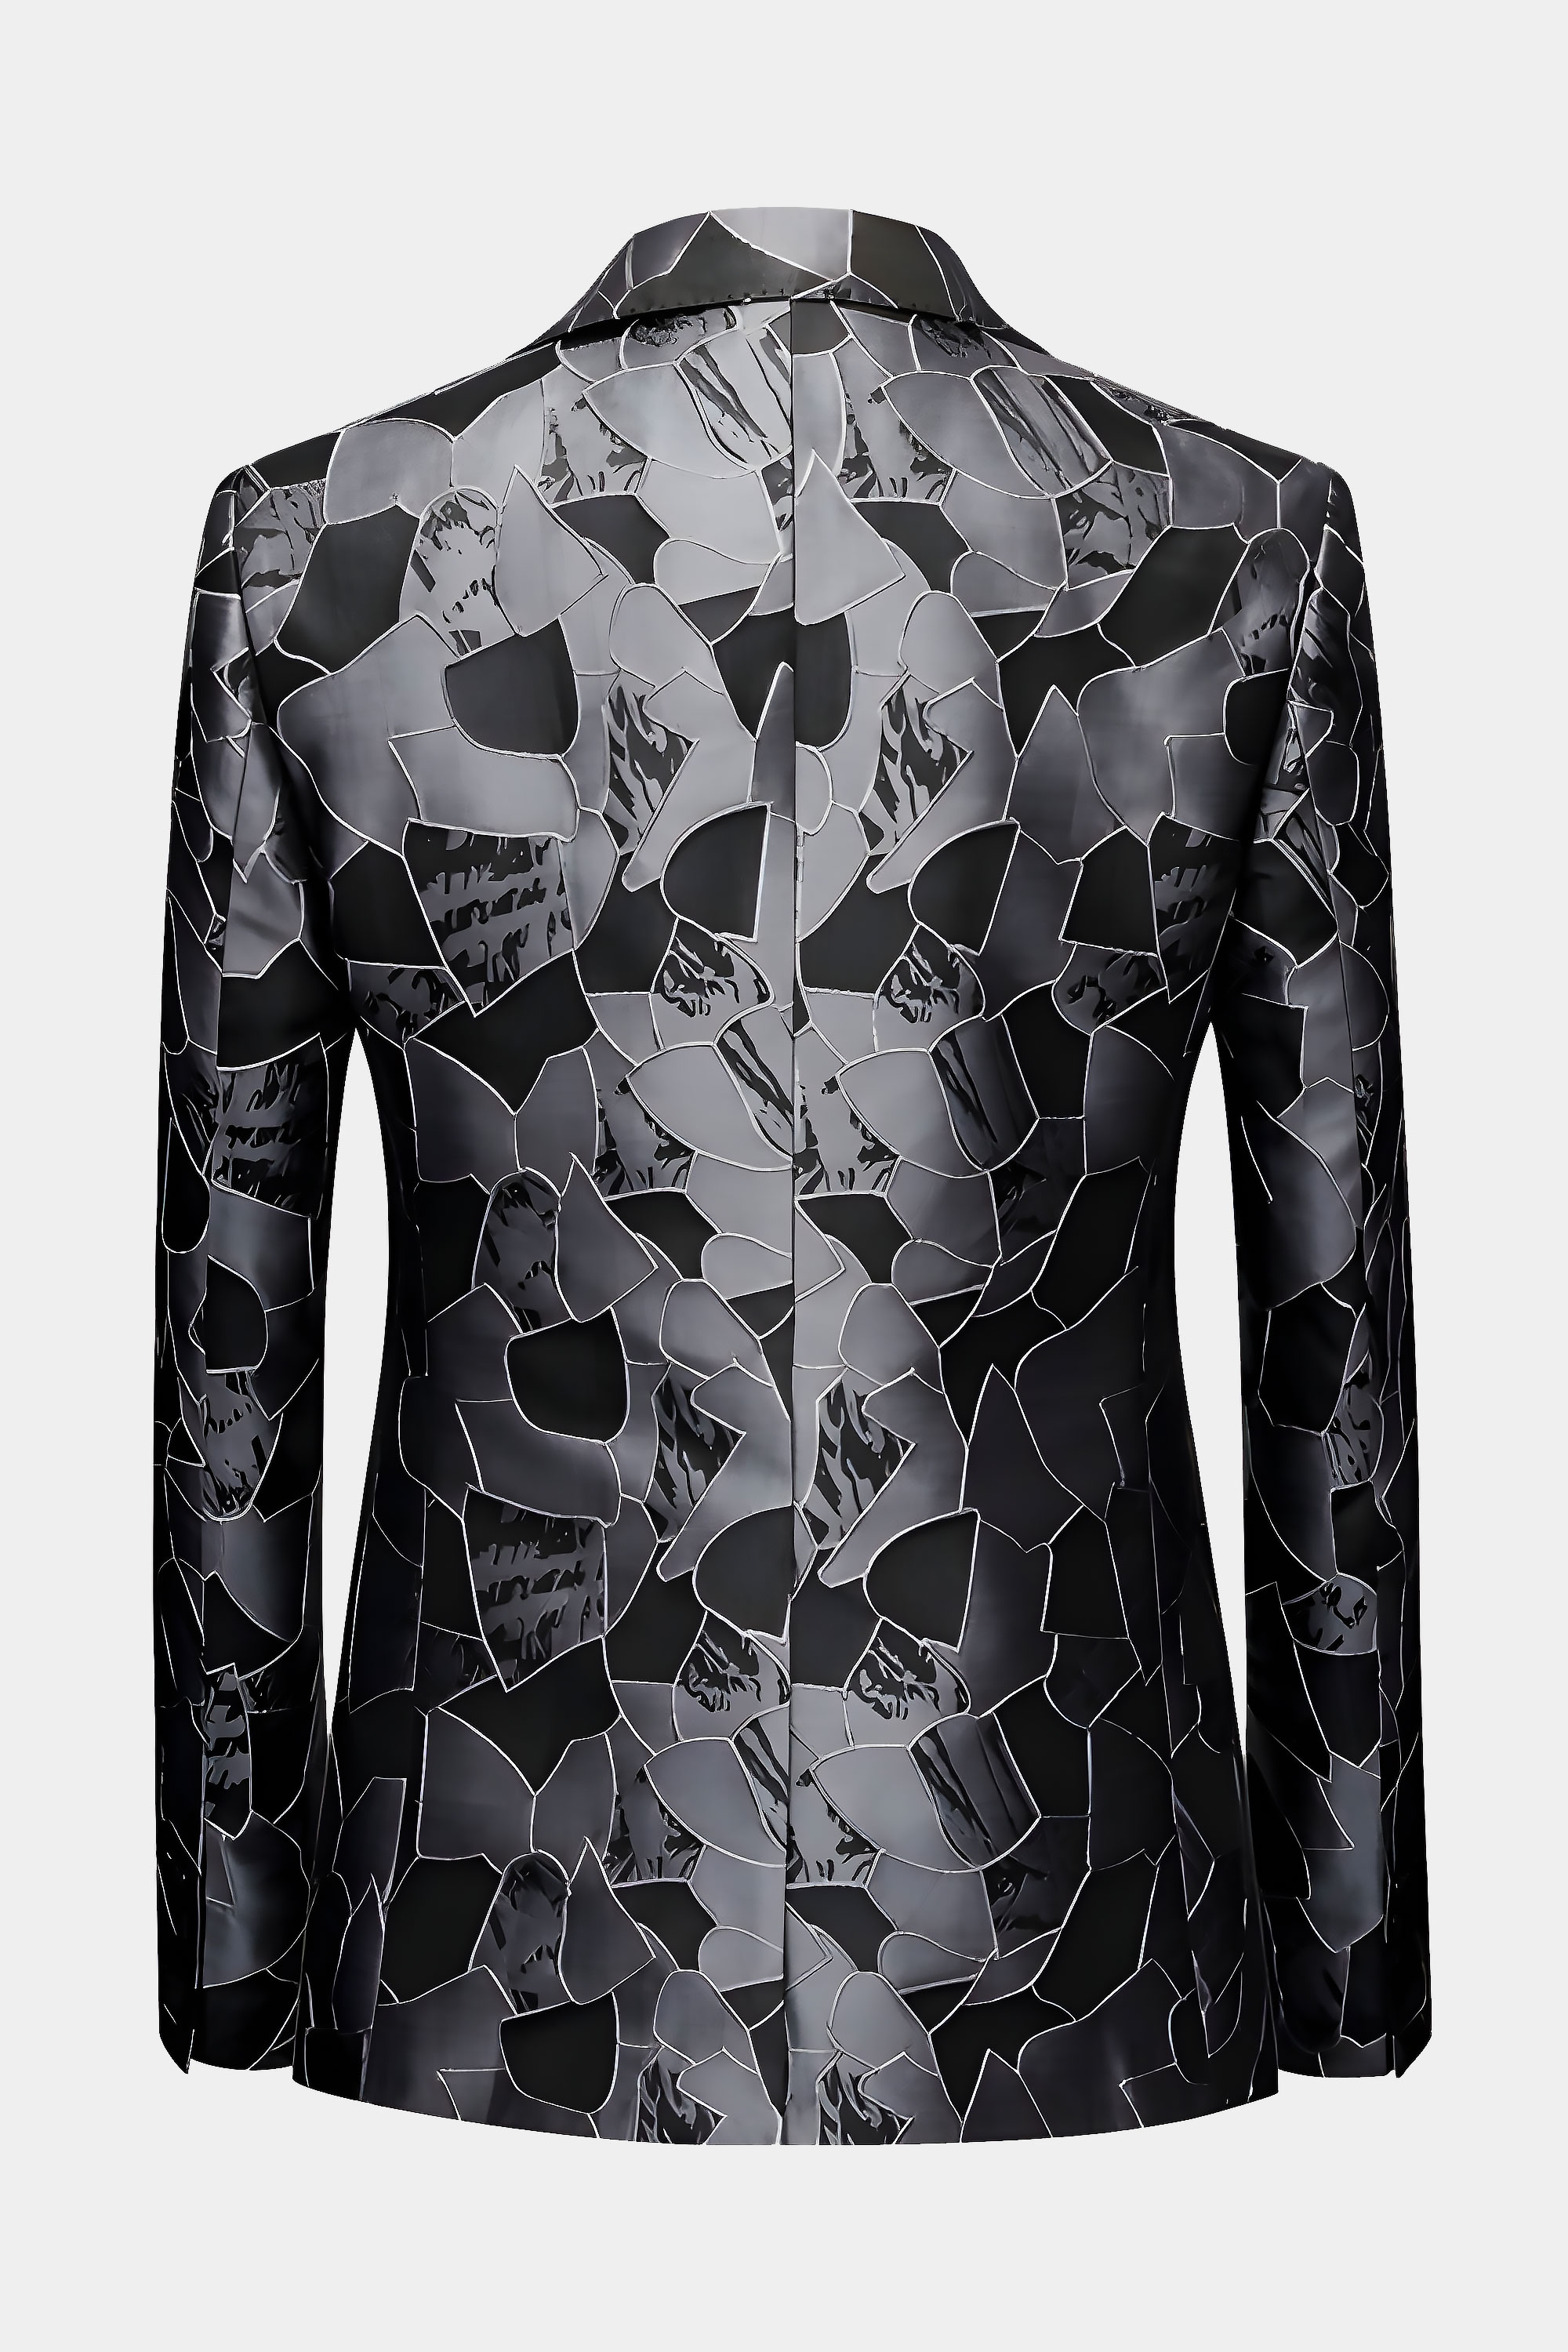 Grey-and-Black-Tuxedo-Jacket-from-Gentlemansguru.com